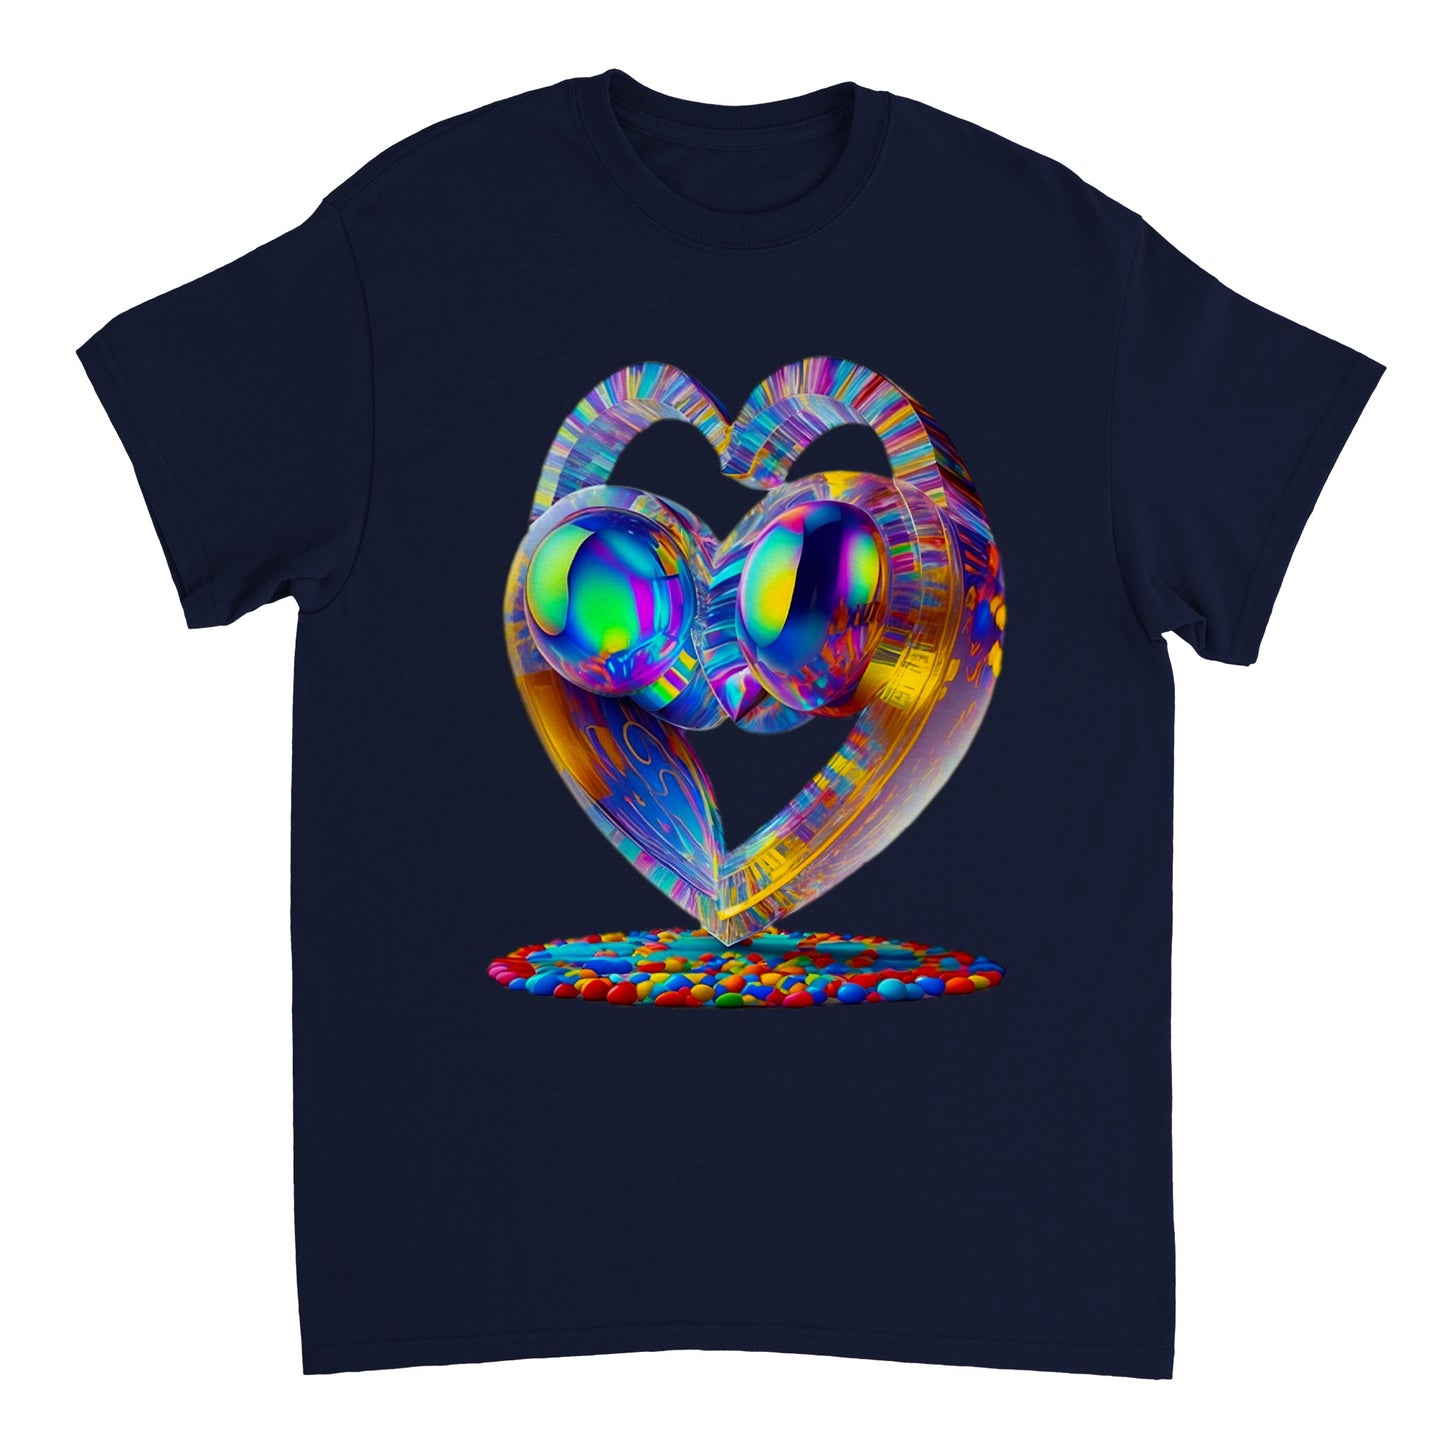 Love Heart - Heavyweight Unisex Crewneck T-shirt 74